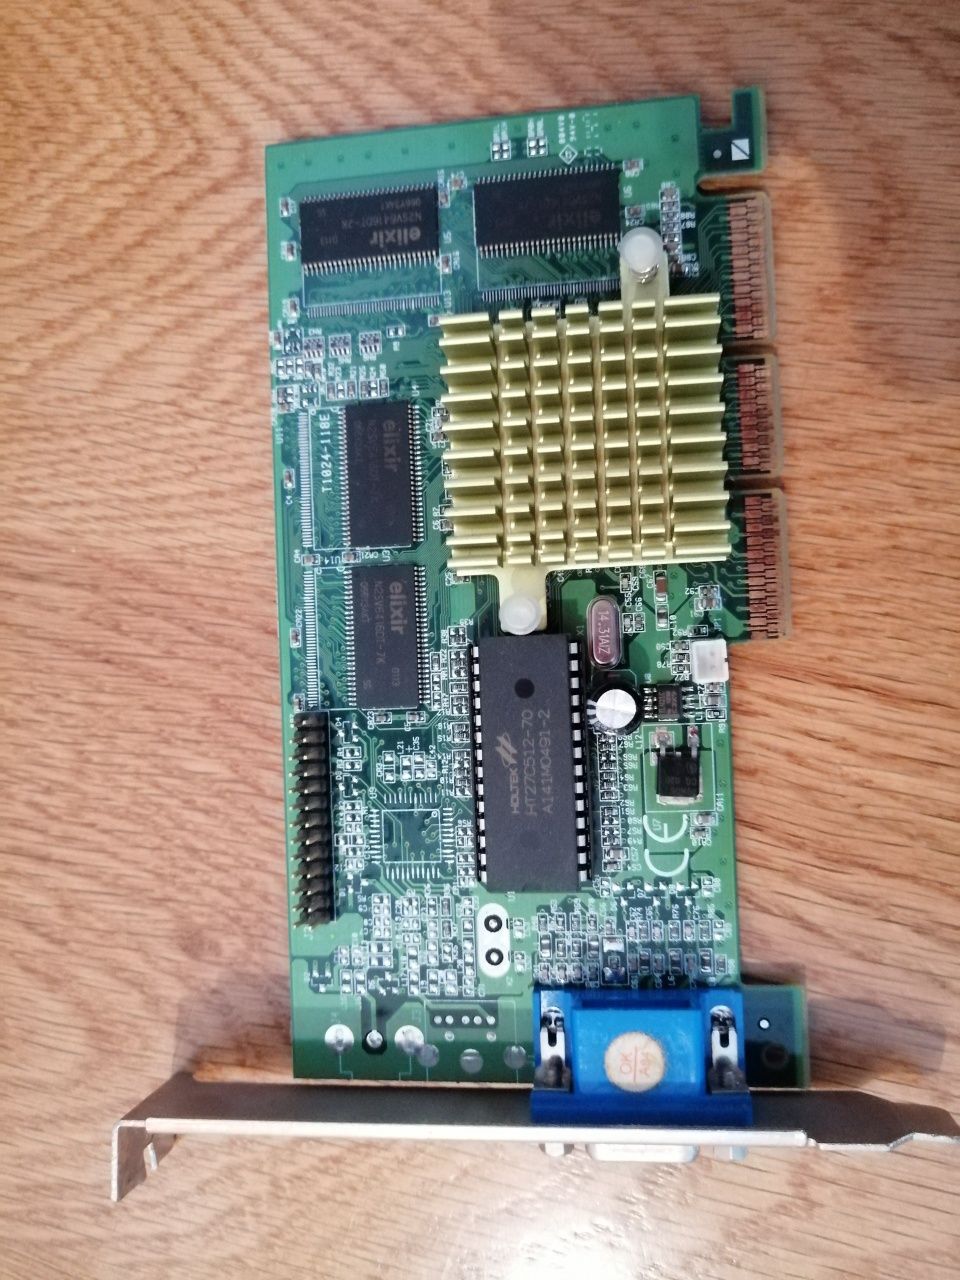 Placas de computador antigo: memória RAM, placa gráfica, de som, modem